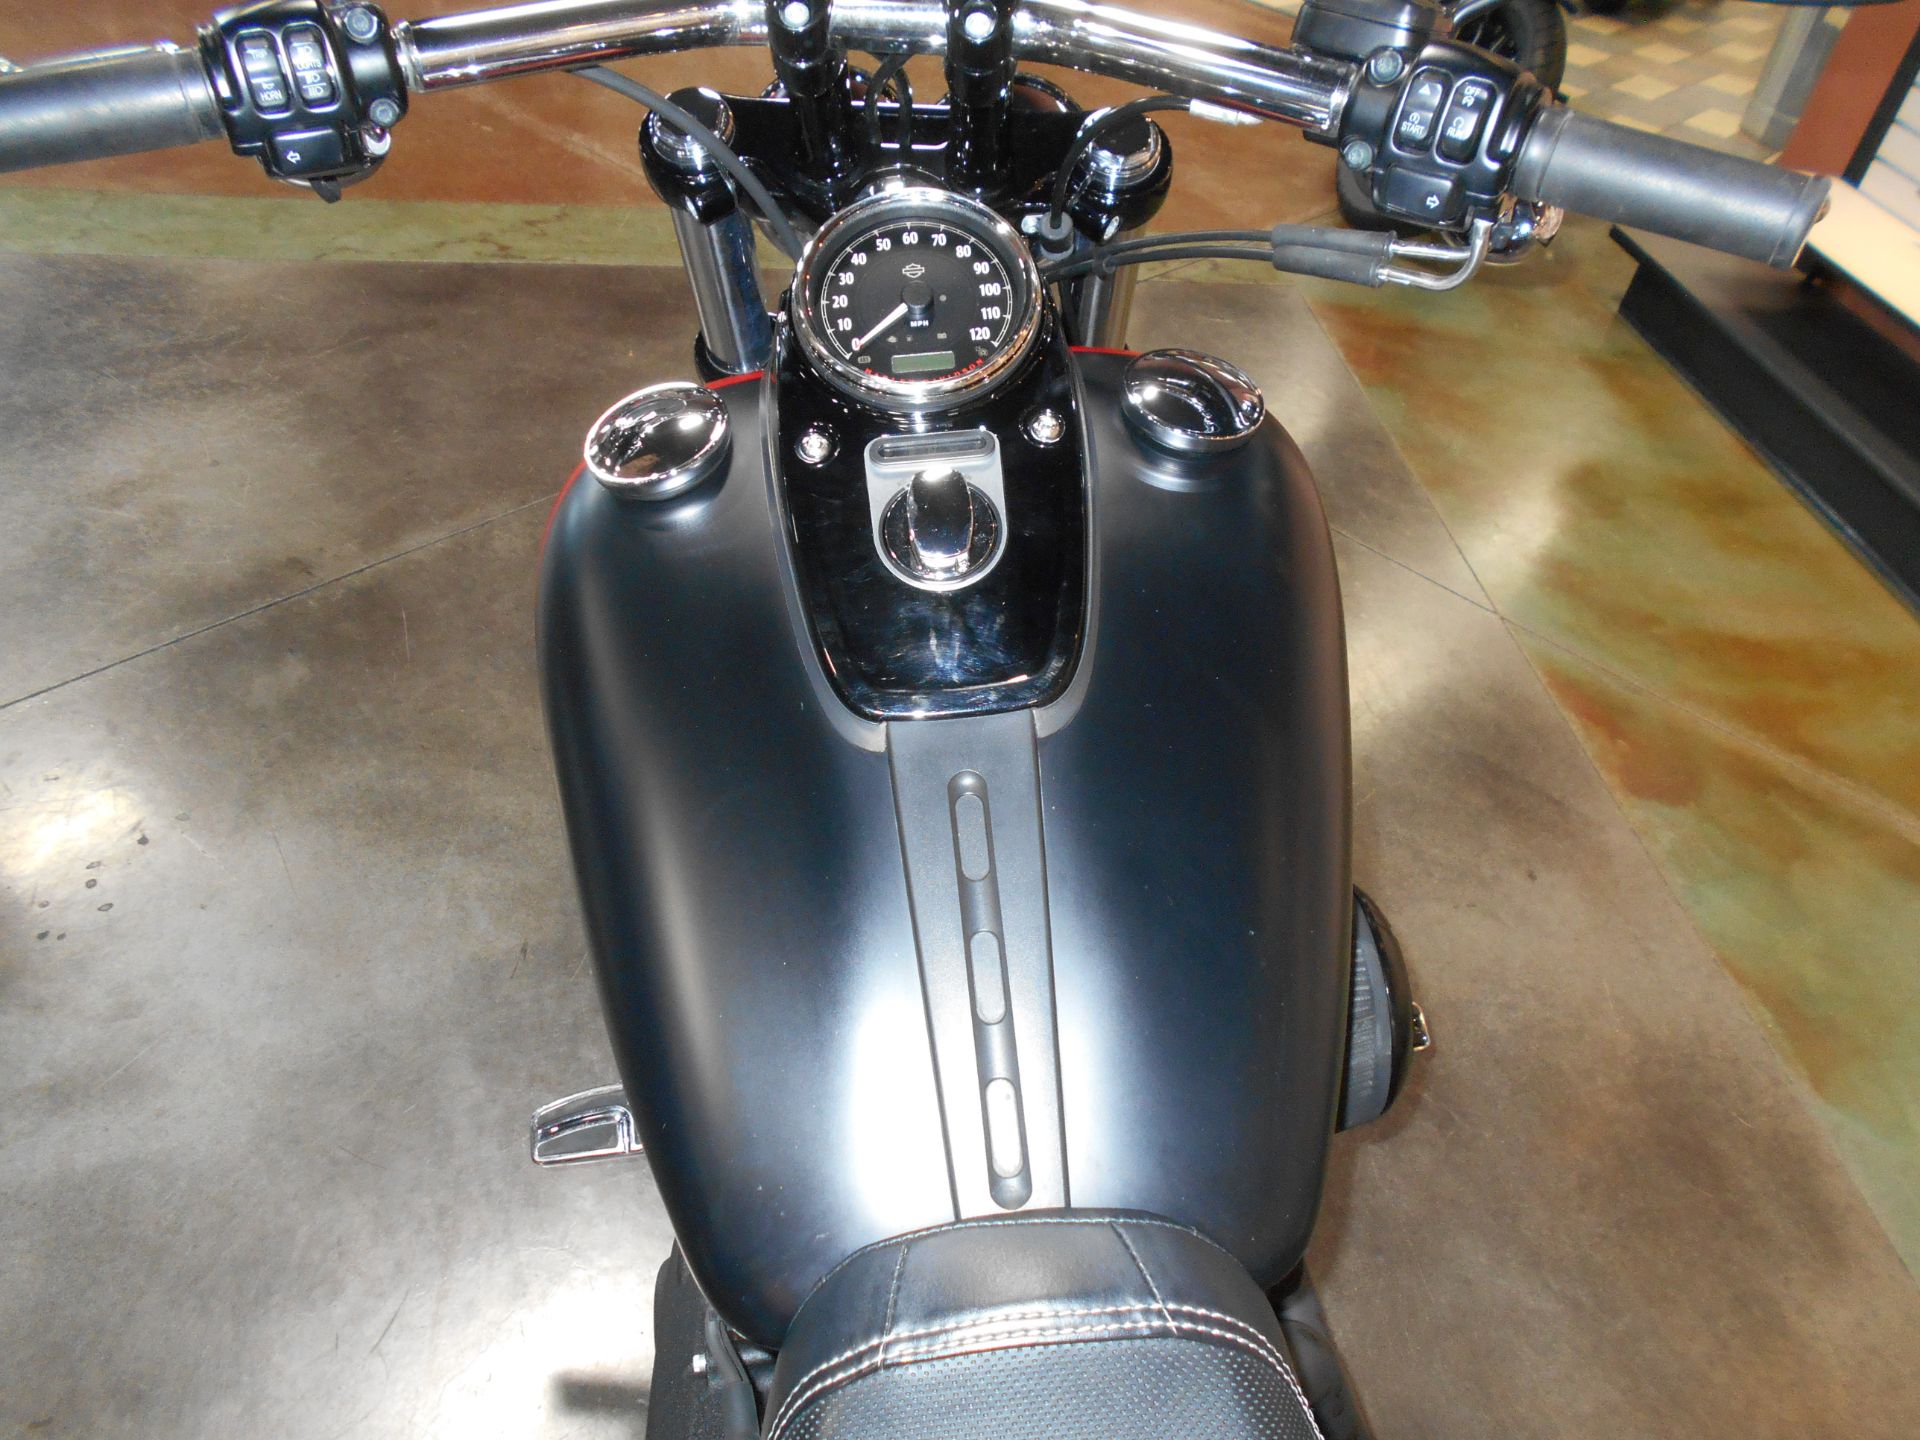 2015 Harley-Davidson Fat Bob® in Mauston, Wisconsin - Photo 8